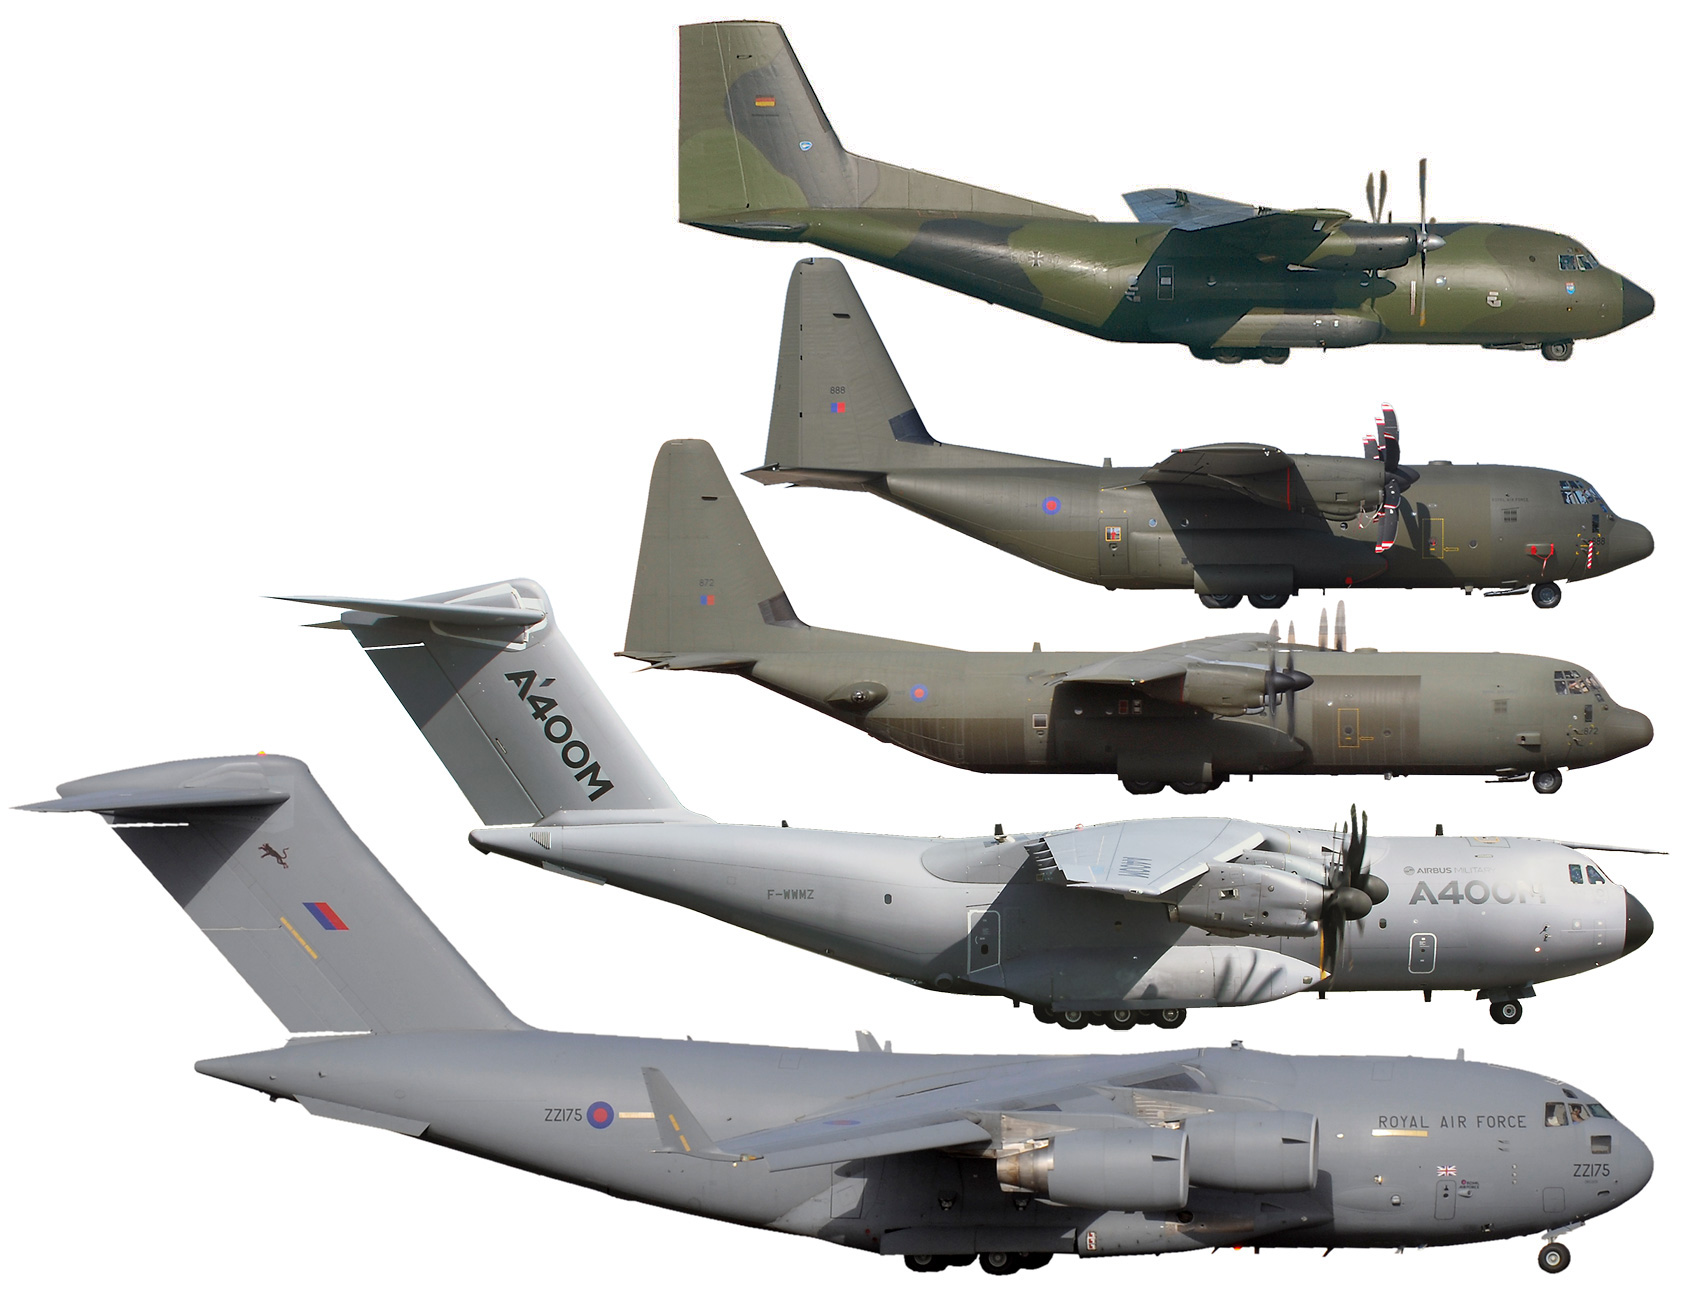 Size_comparison_C-17_A400M_C-130J-30_C-130J_C-160.jpg